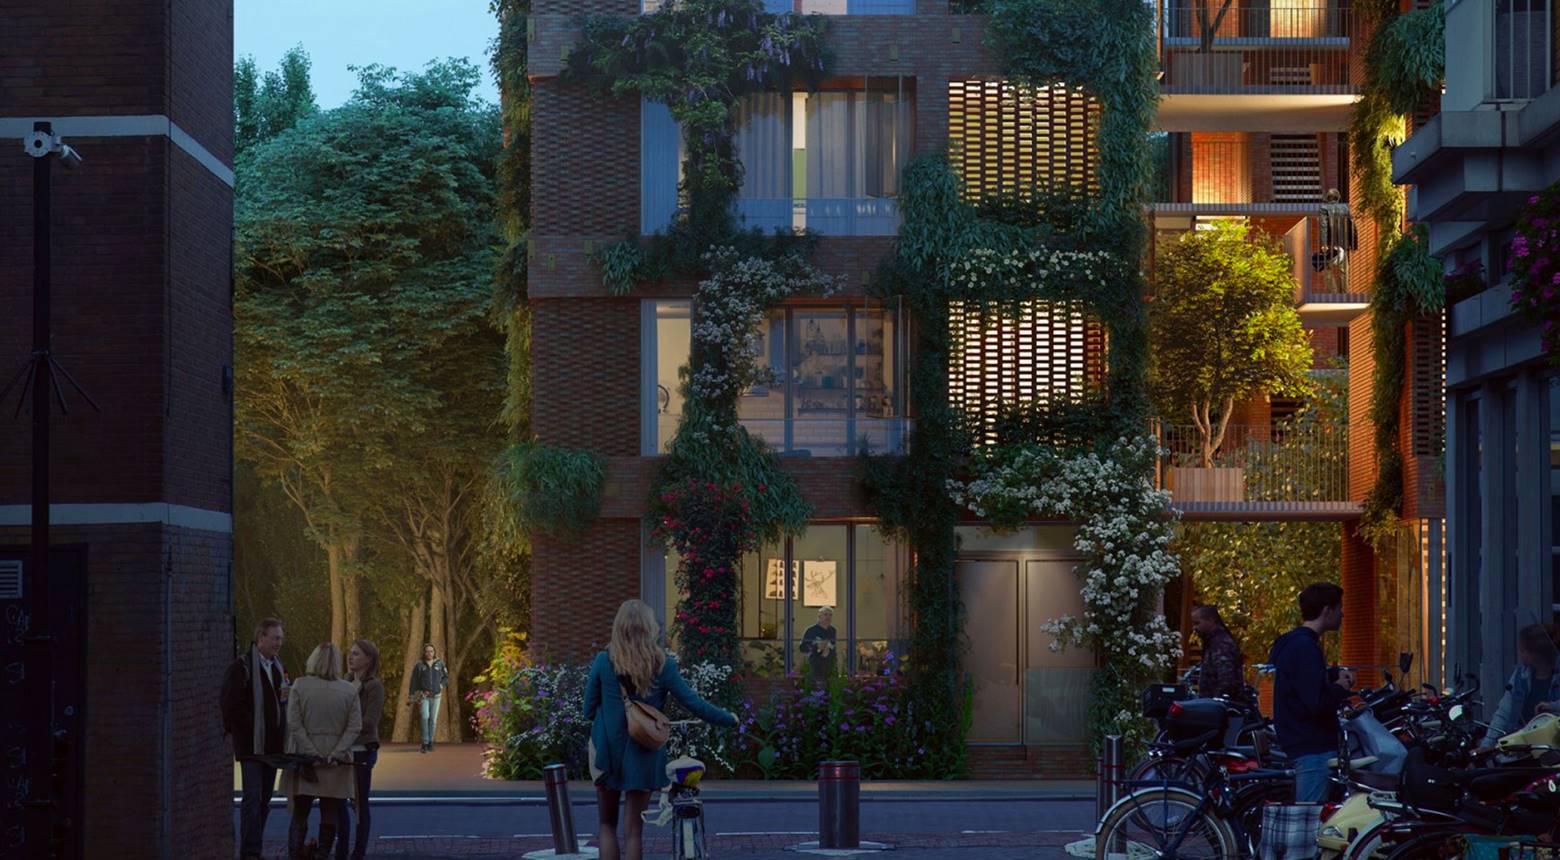 Project De Linné - Donker Design - Donker Design mocht in 2018 deel uitmaken van het ontwikkelingsteam voor het plan De Linné aan de Polderweg te Amsterdam